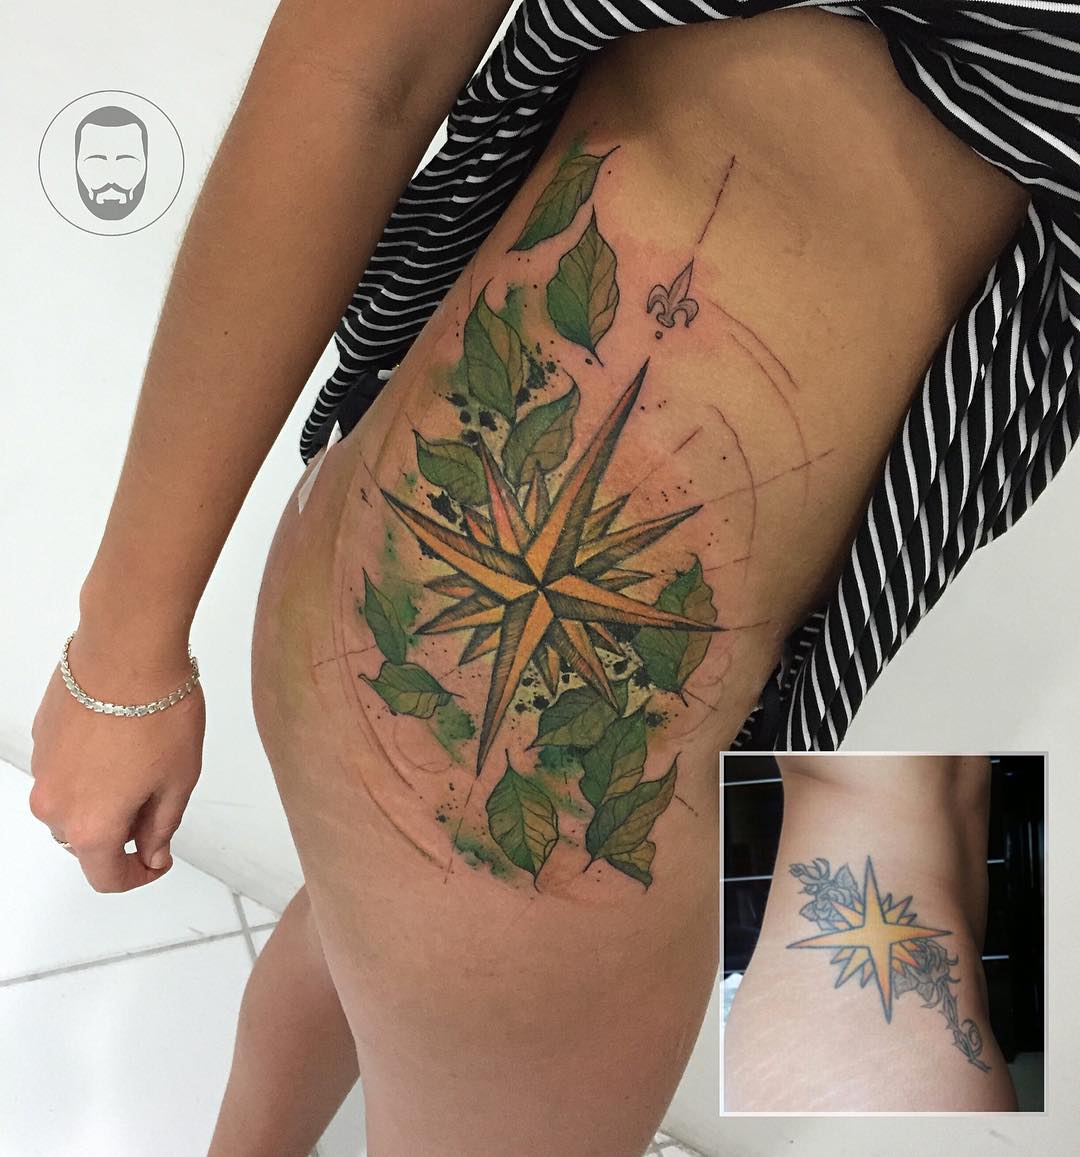 ellie's tattoo  Caligrafia para tatuagem, Esboço de tatuagem, Ideias de  tatuagens